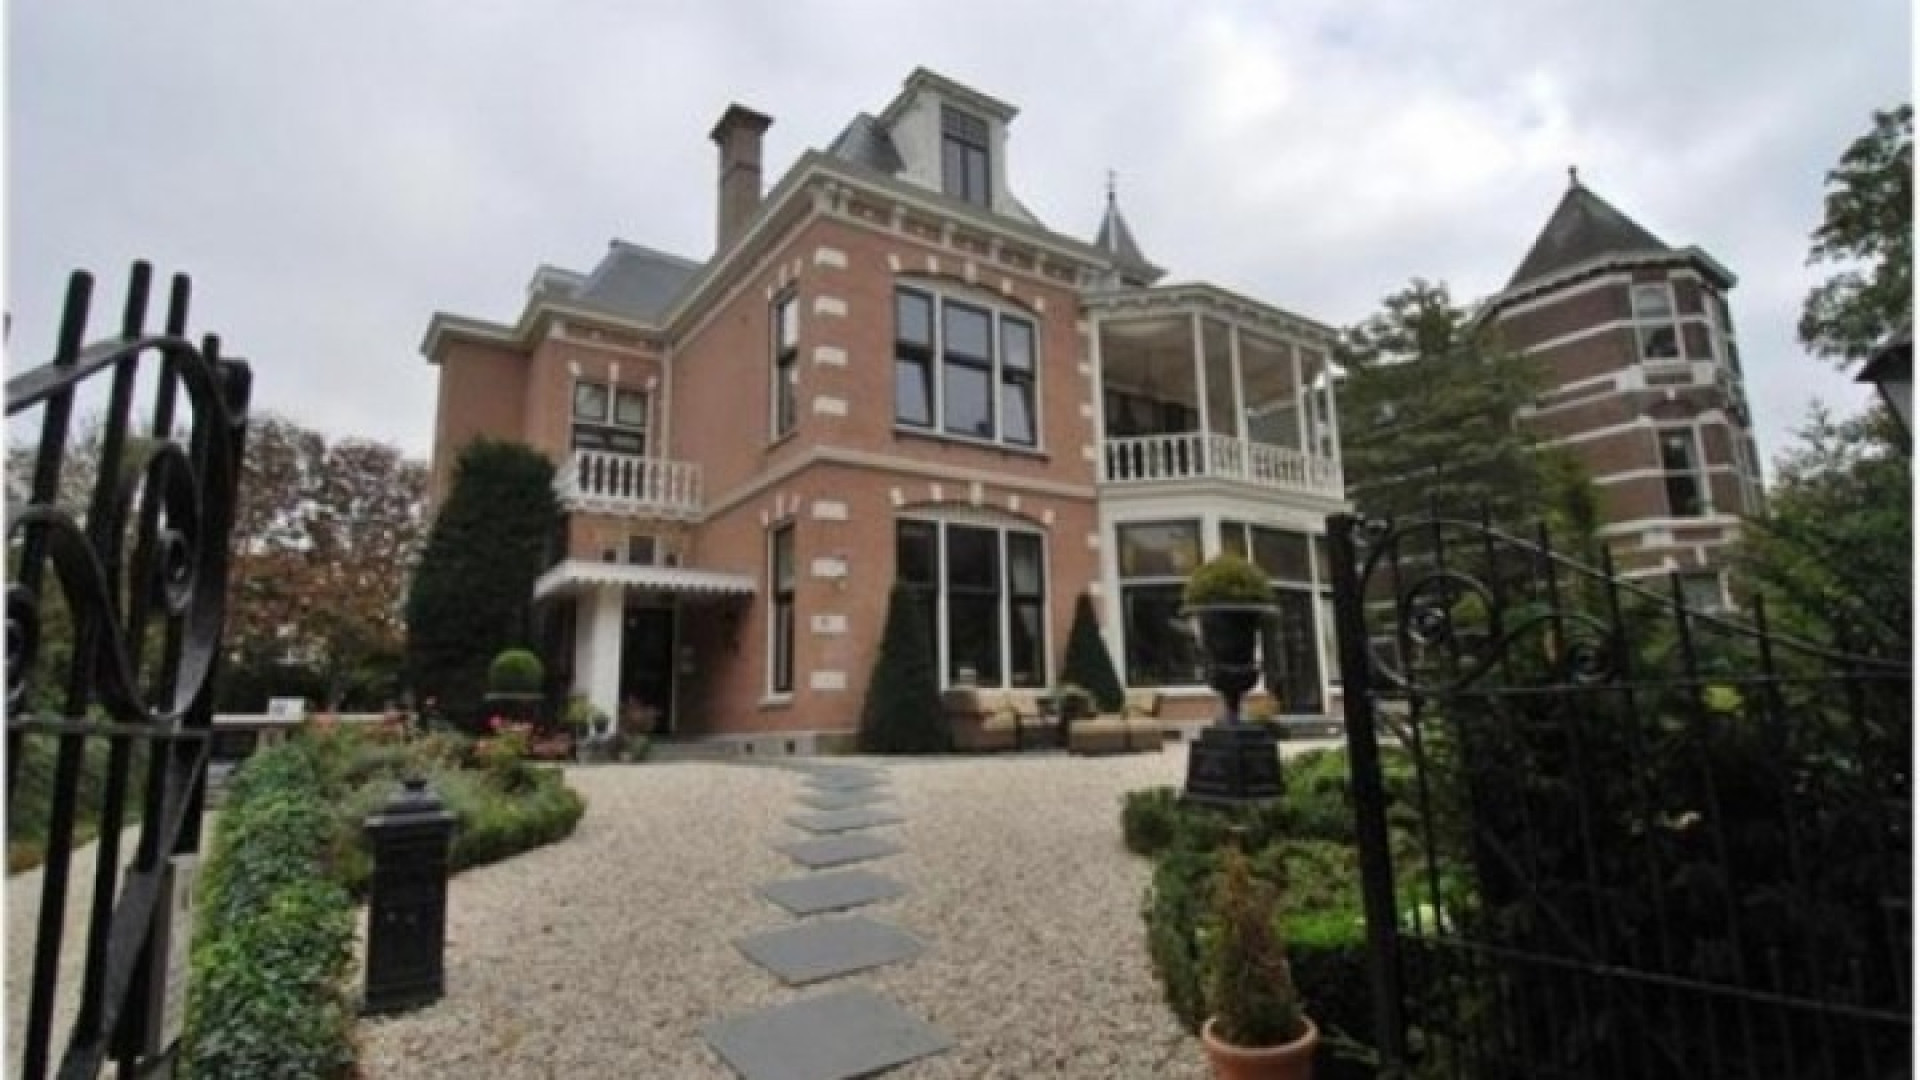 Topvoetbal trainer Martin Jol zet zijn Haagse miljoenenvilla te huur. Zie foto's